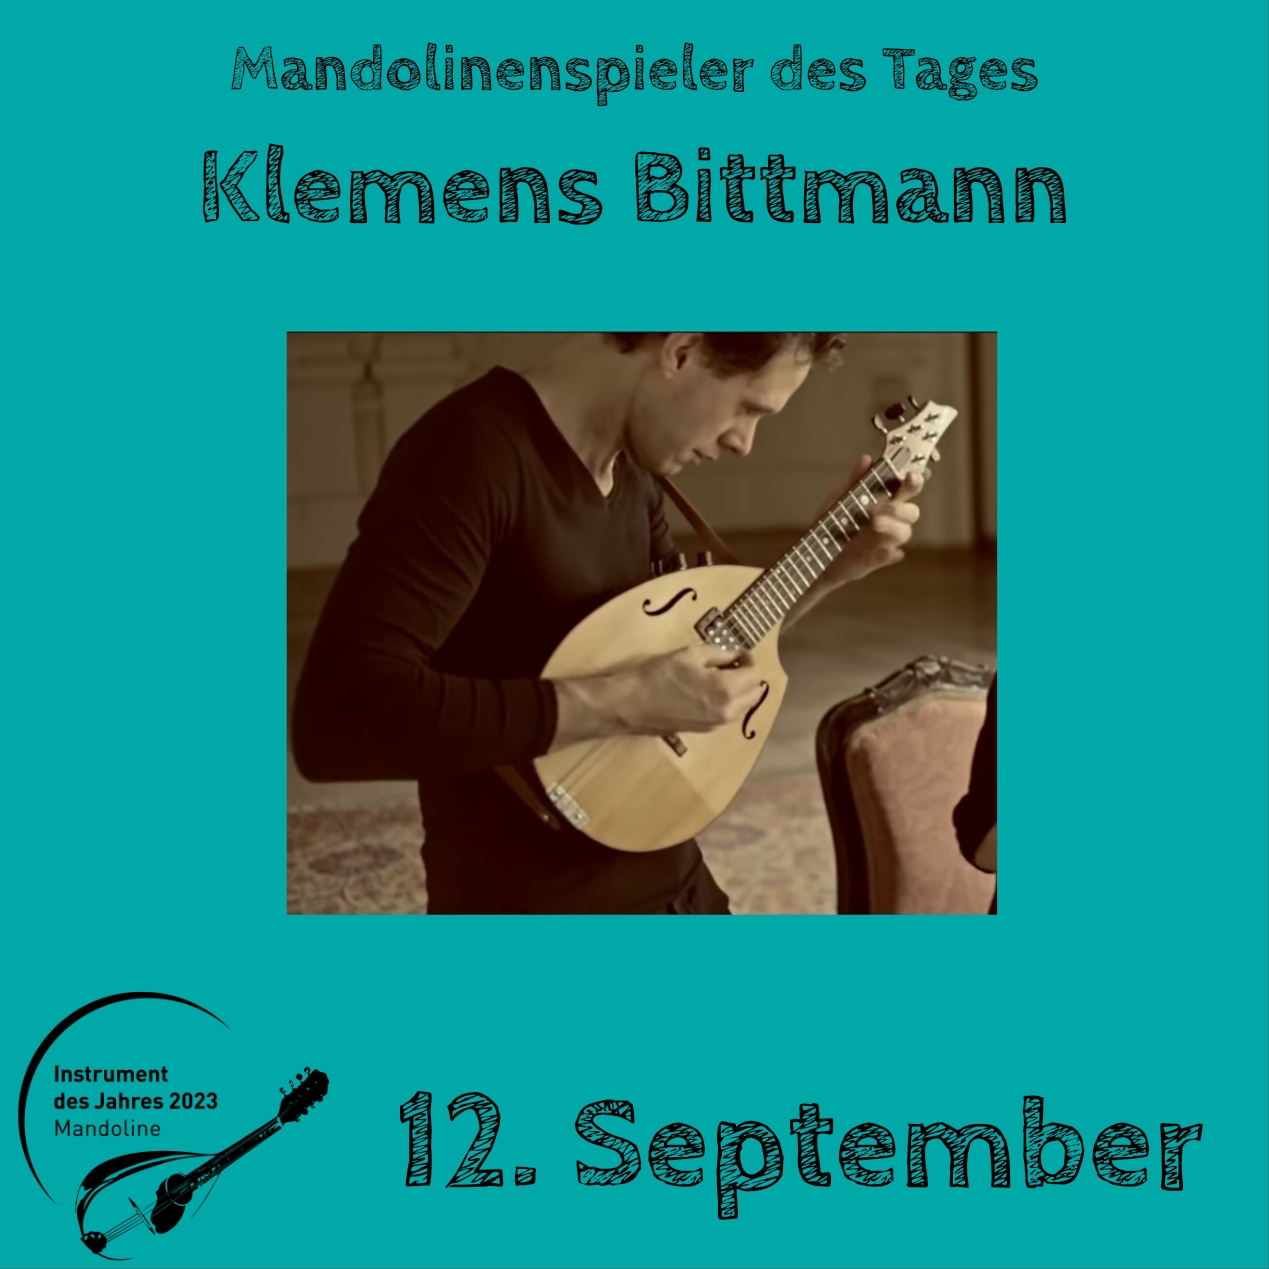 12. September - Klemens Bittmann Mandoline Instrument des Jahres 2023 Mandolinenspieler Mandolinenspielerin des Tages